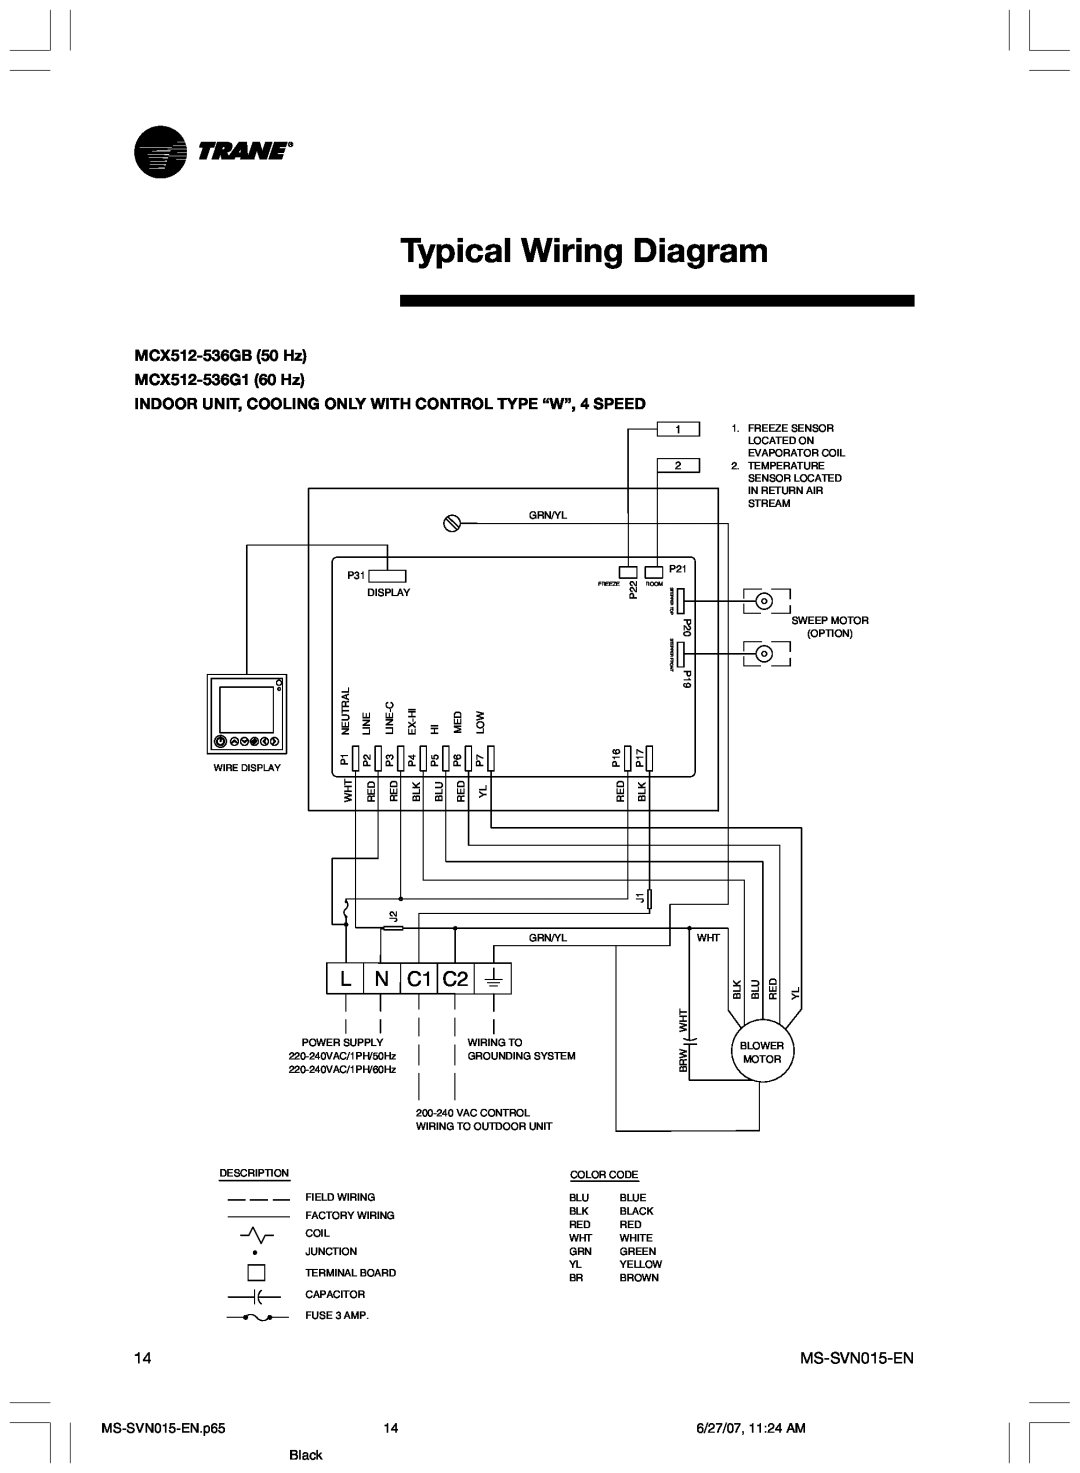 Trane Typical Wiring Diagram, C1 C2, MCX512-536GB50 Hz MCX512-536G160 Hz, MS-SVN015-EN.p65, 6/27/07, 11 24 AM, Black 